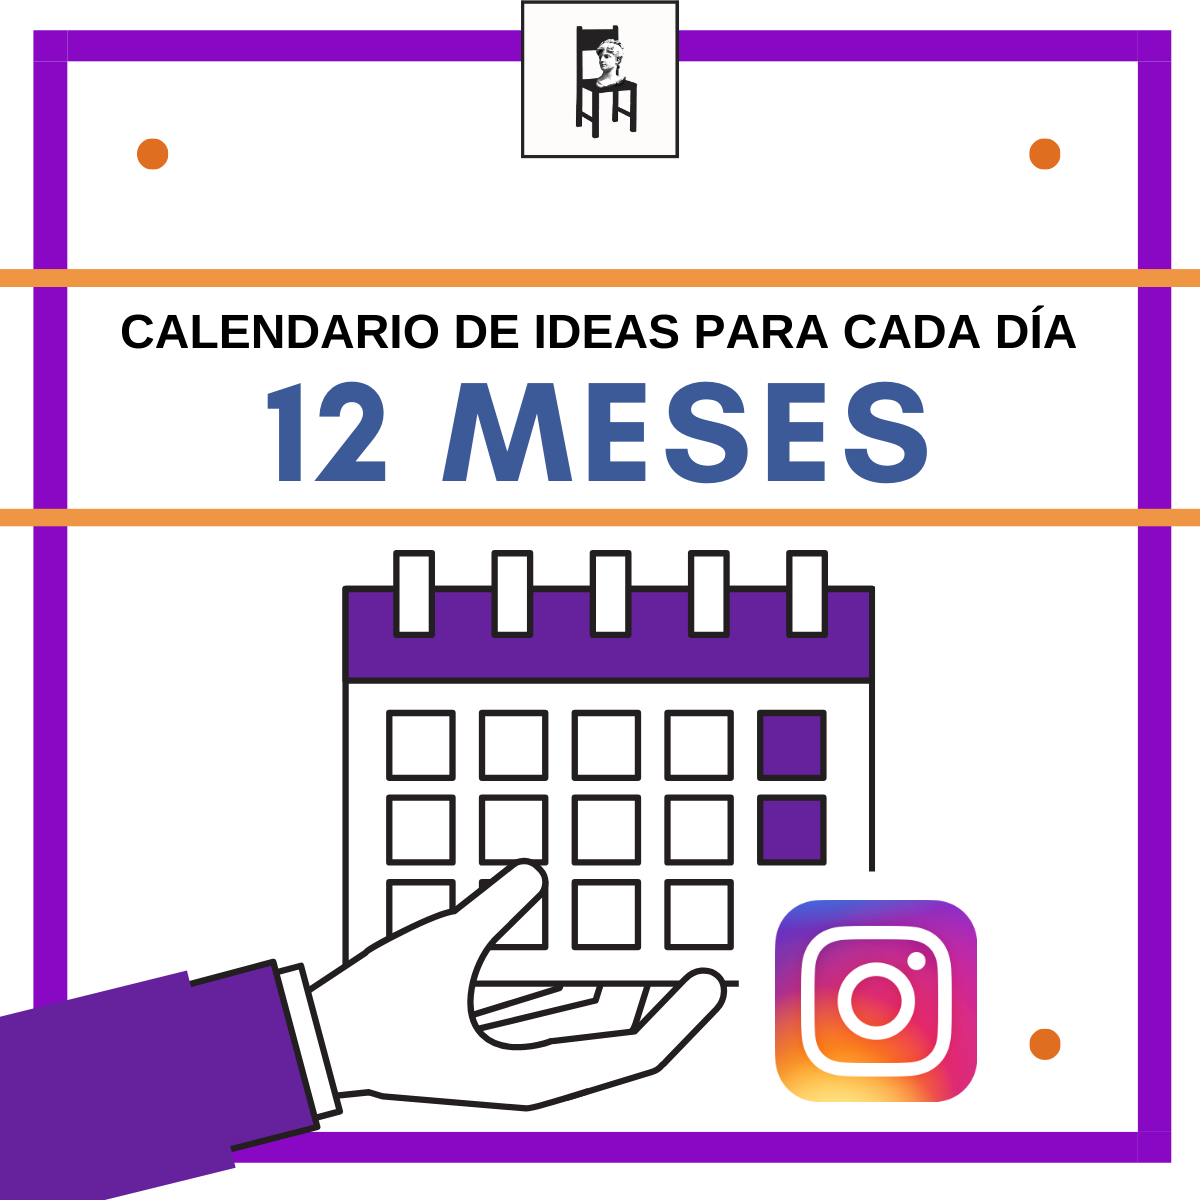 Calendario Instagram 12 meses